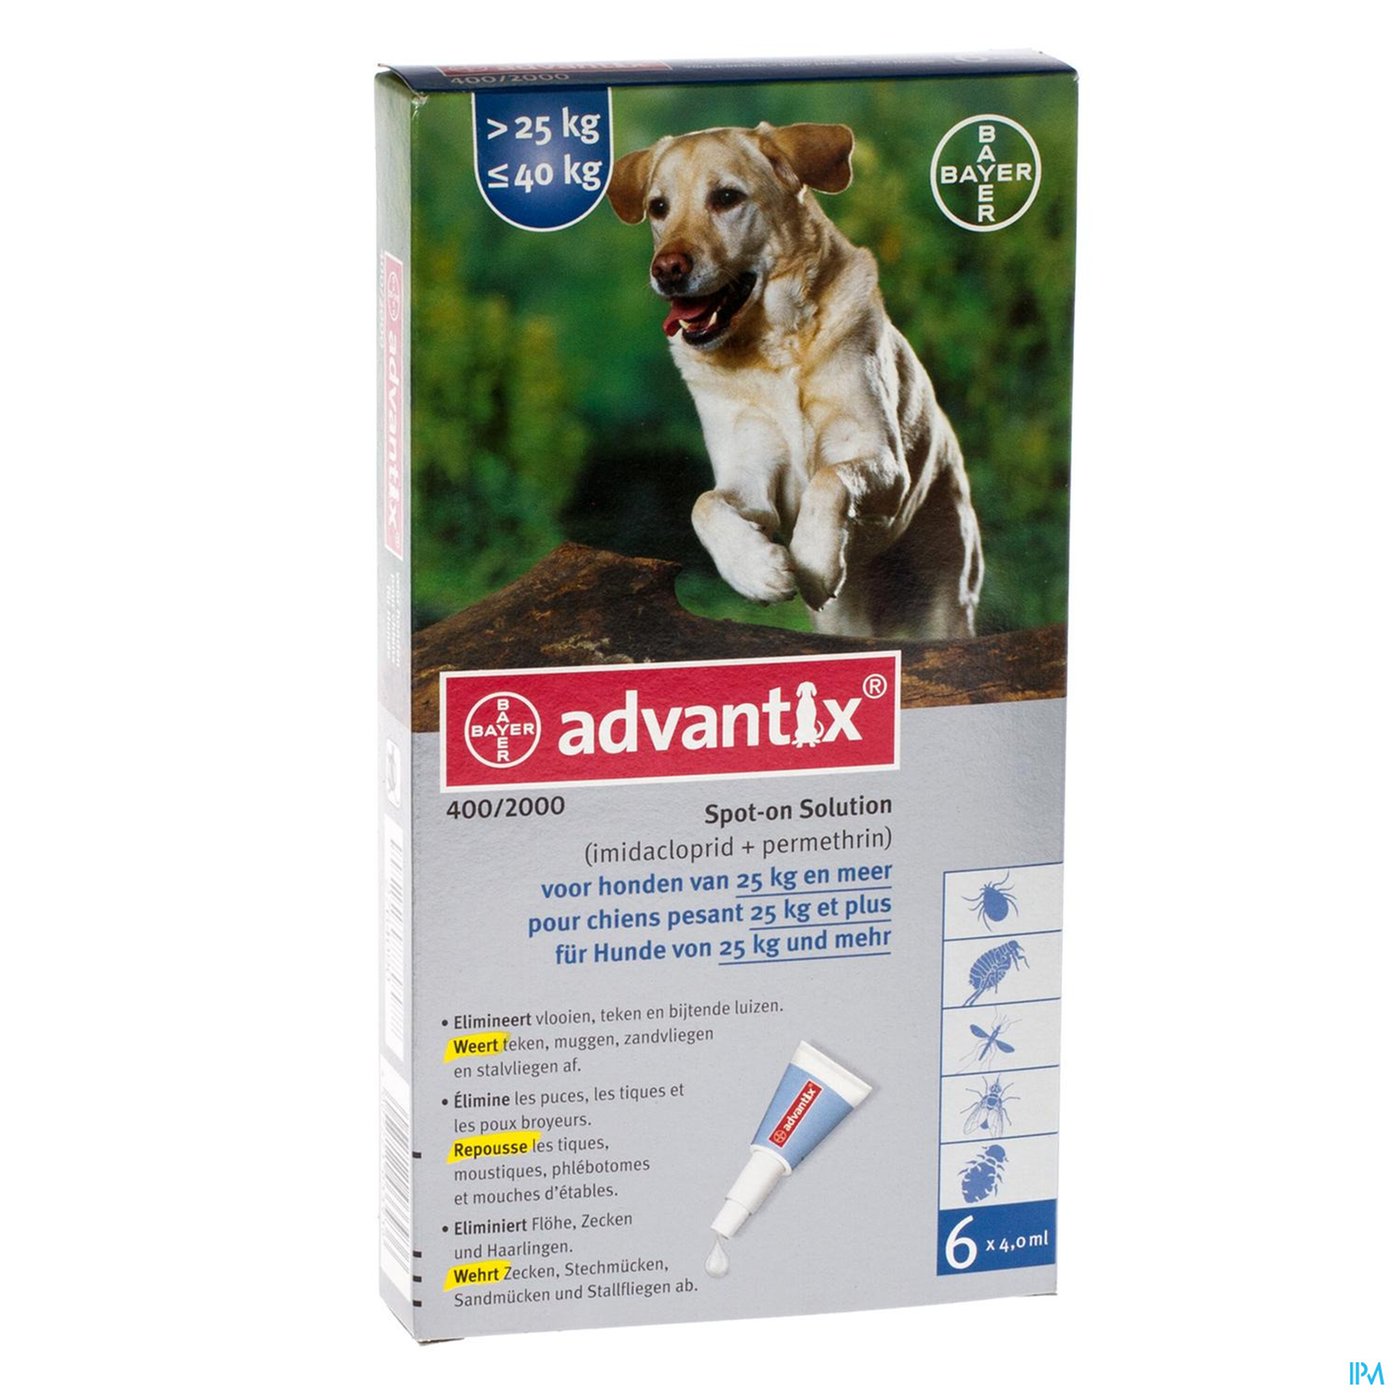 Advantix 400/2000 Honden 25<40kg Fl 6x4,0ml packshot